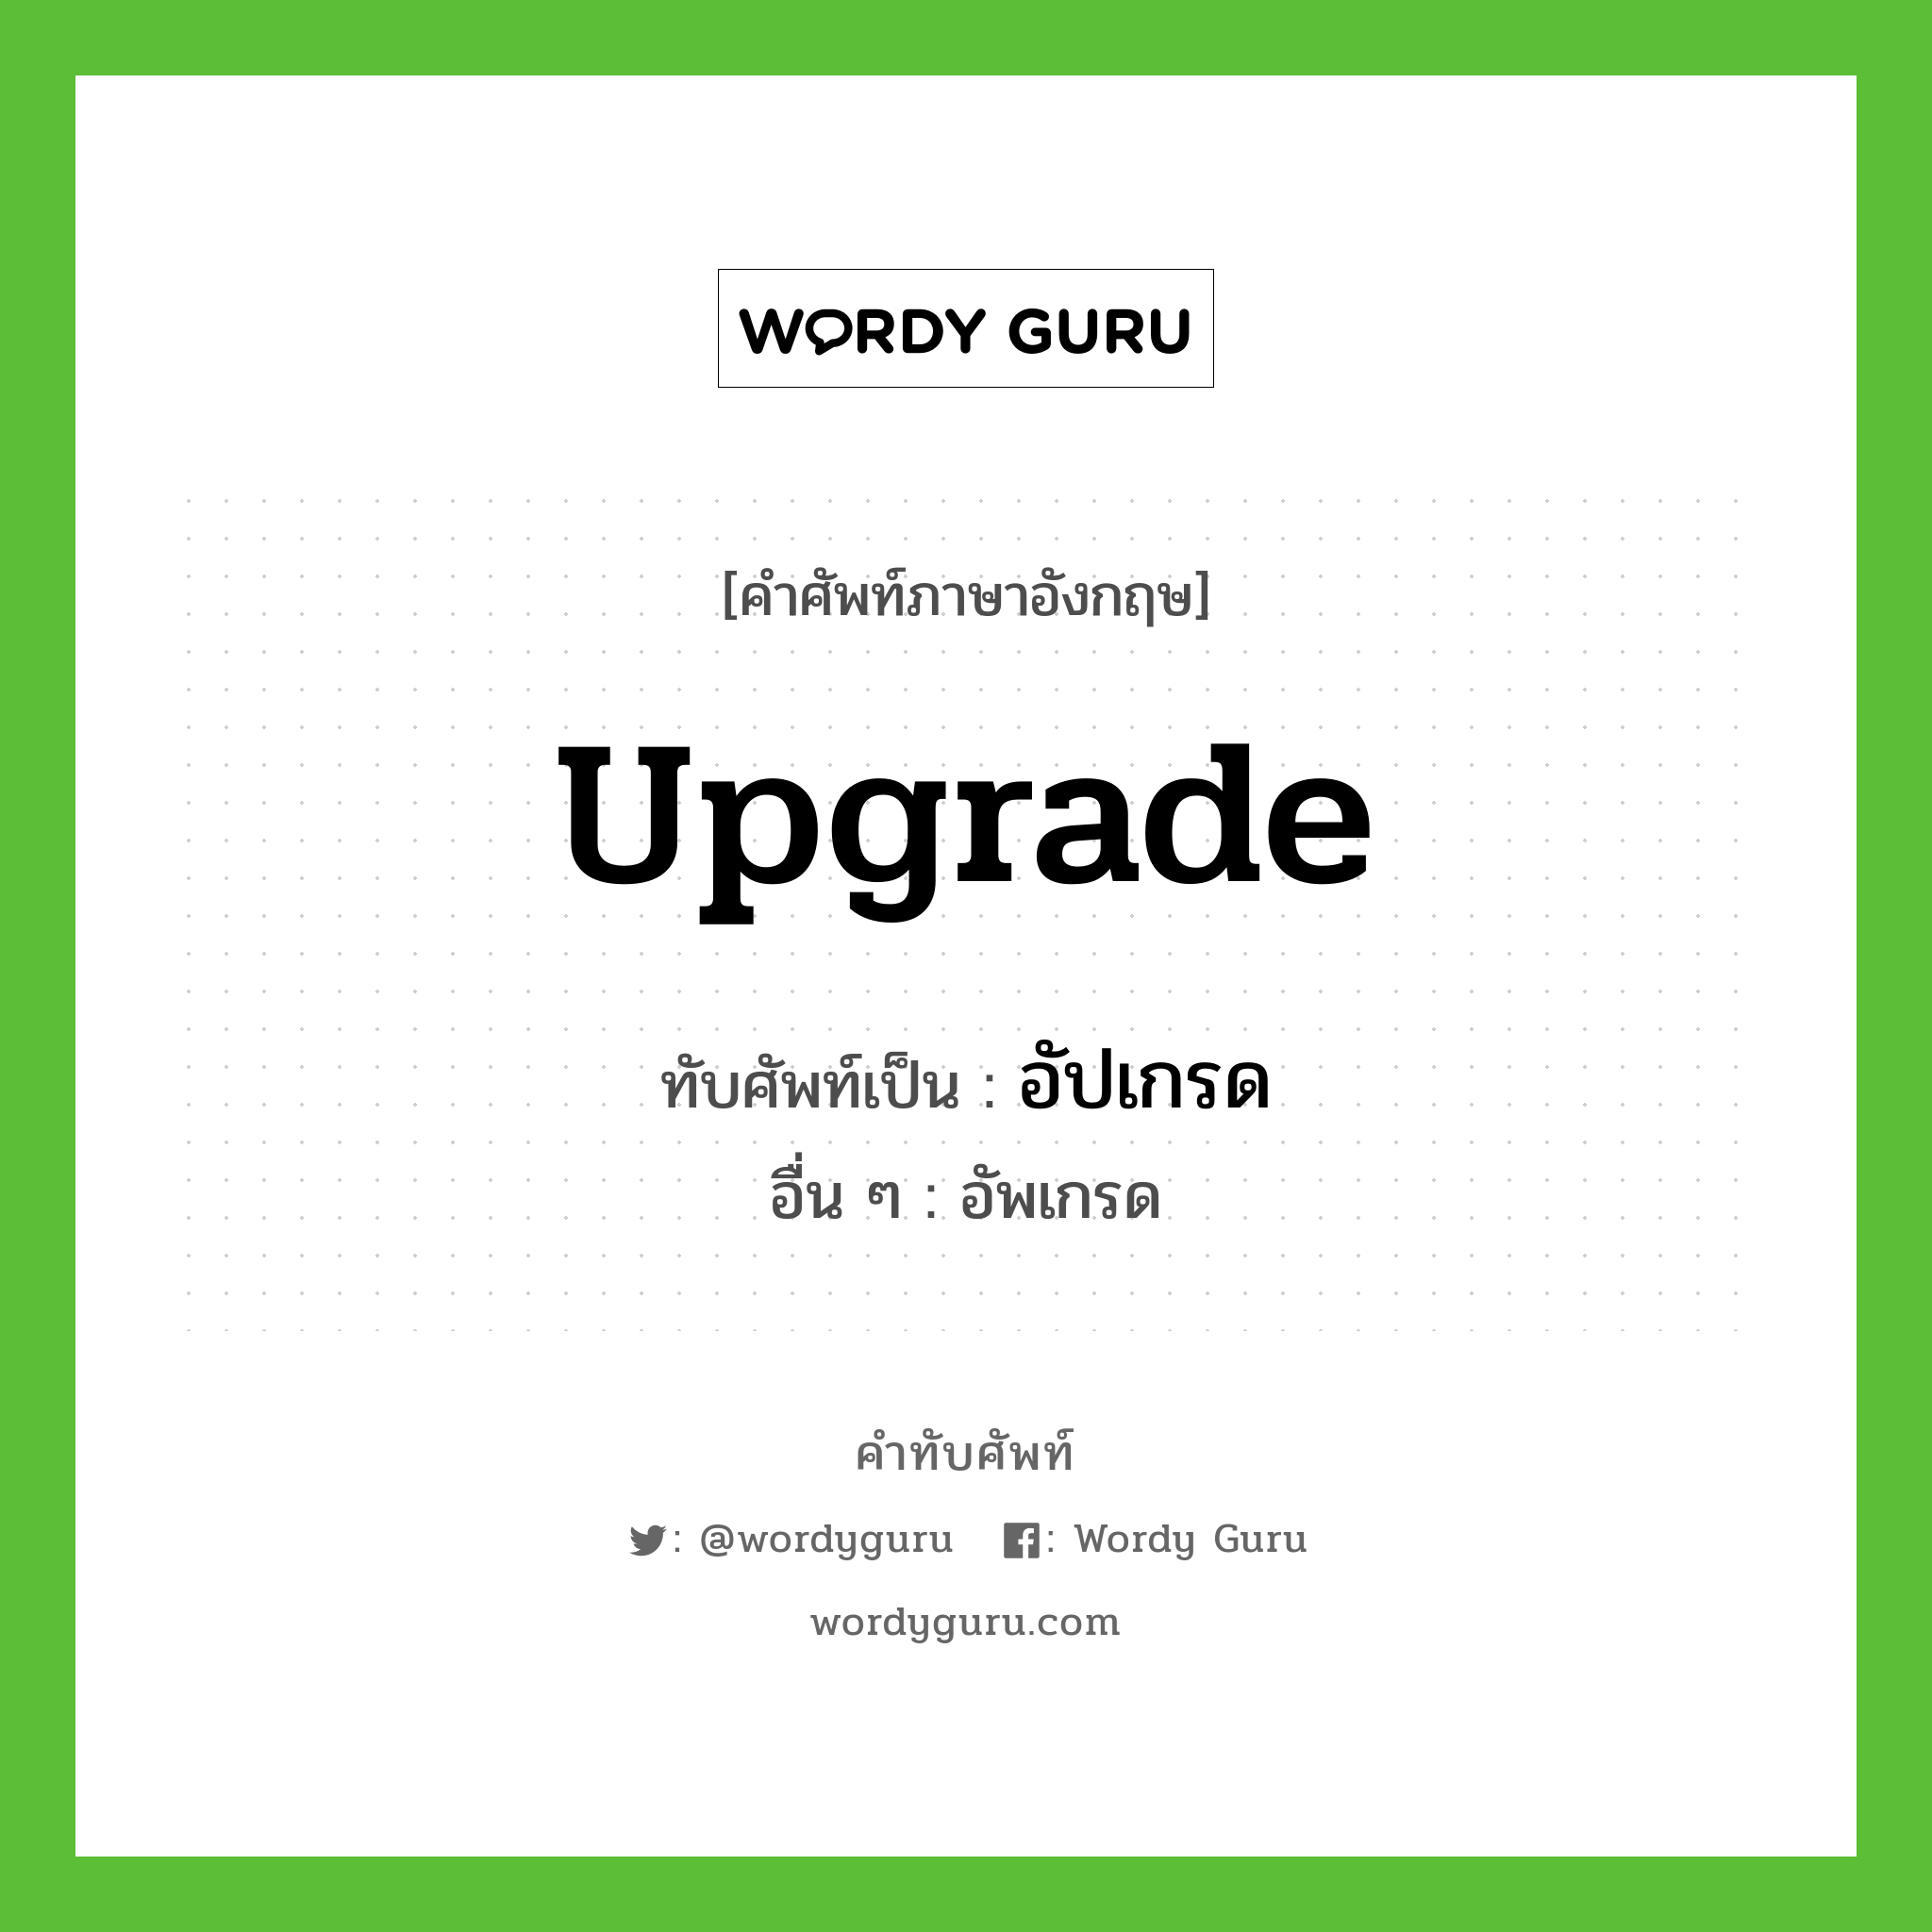 upgrade เขียนเป็นคำไทยว่าอะไร?, คำศัพท์ภาษาอังกฤษ upgrade ทับศัพท์เป็น อัปเกรด อื่น ๆ อัพเกรด